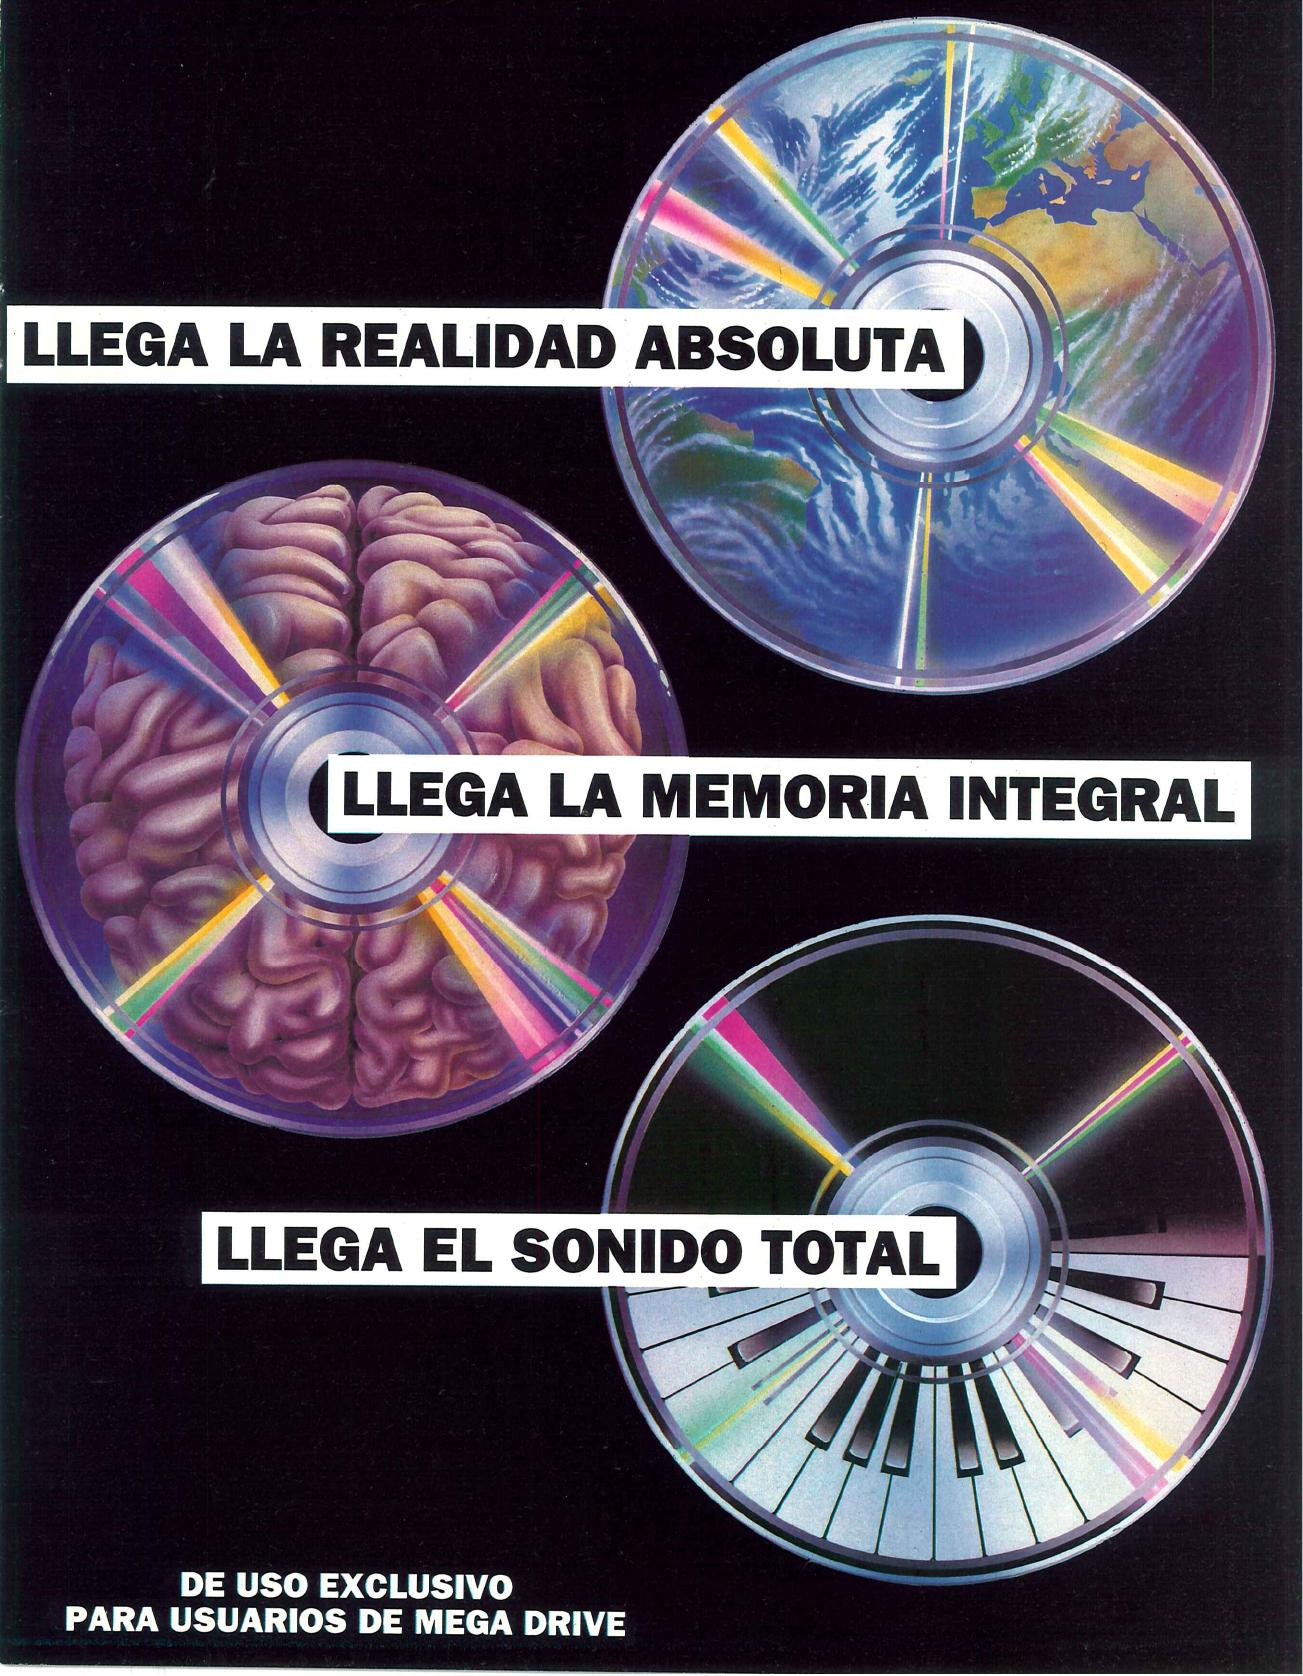 1993 06 - Teaser Mega CD.jpg